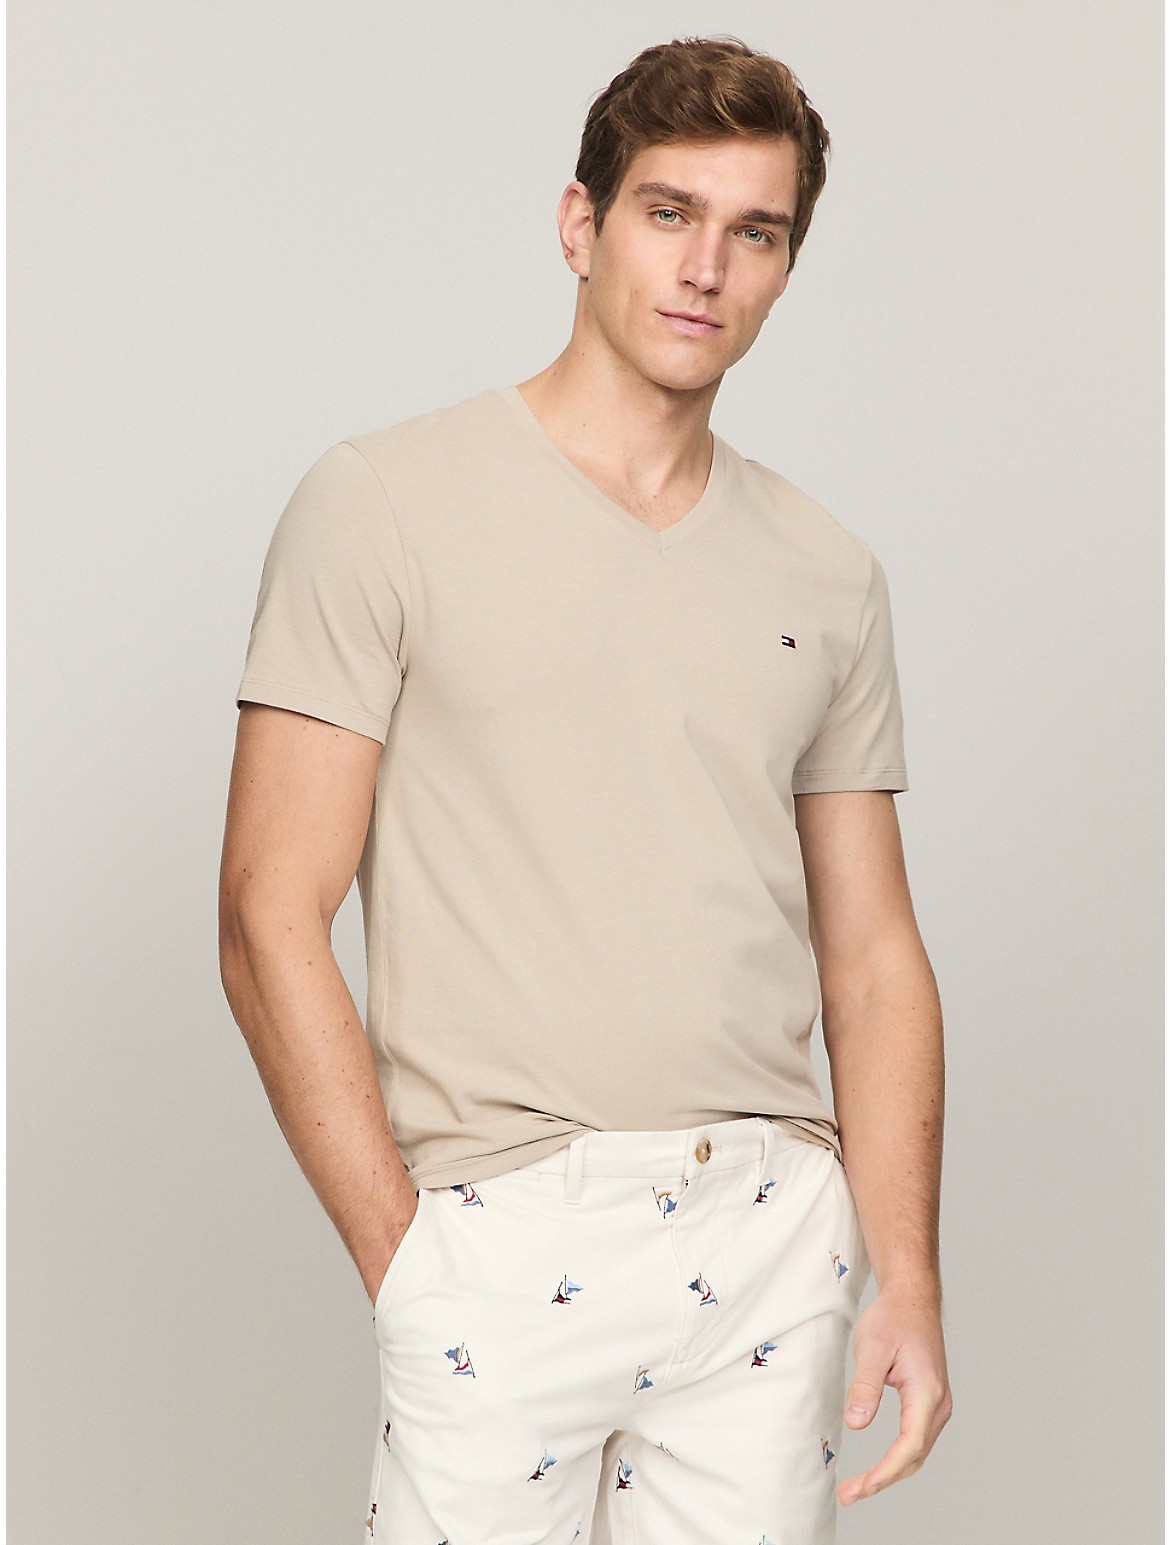 Tommy Hilfiger Men's Slim Fit Solid V-Neck T-Shirt